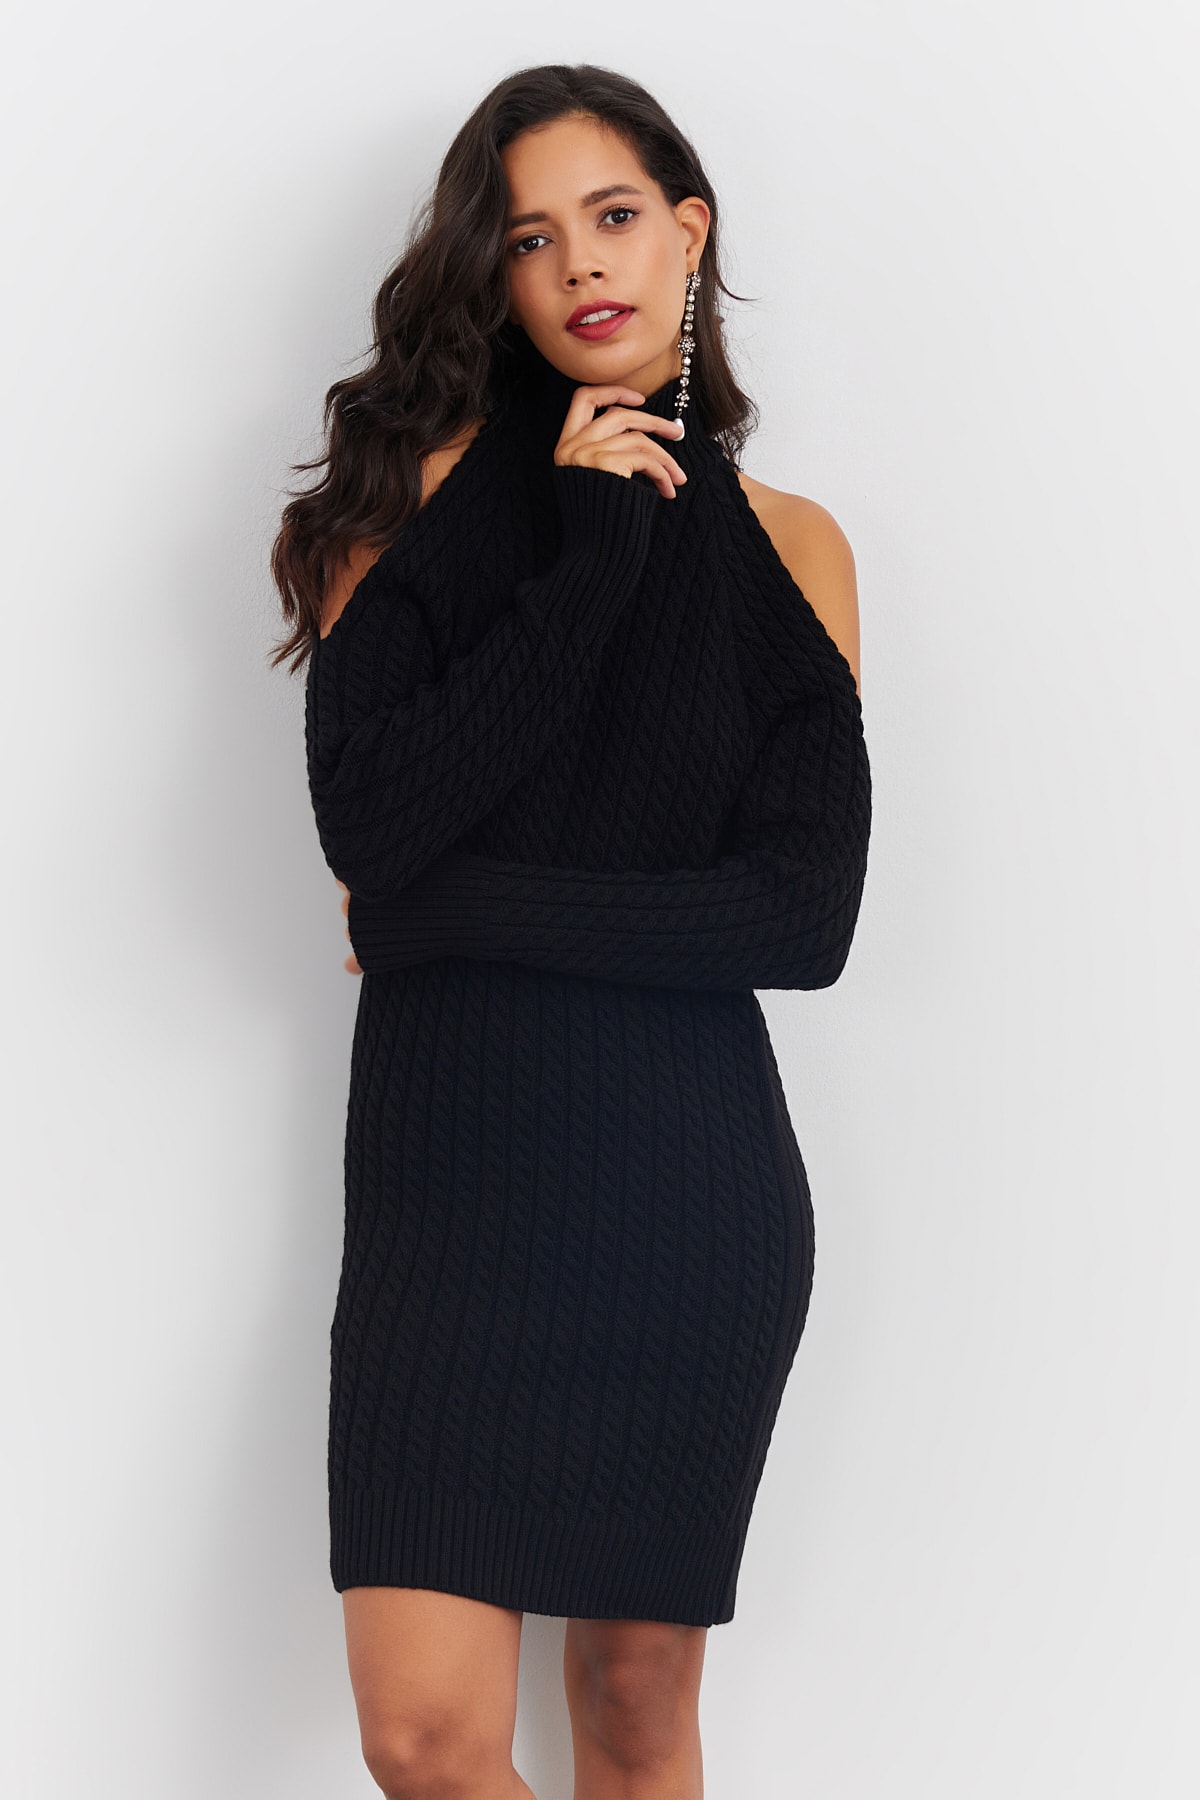 Cool & Sexy Kleid Schwarz A-Linie Fast ausverkauft